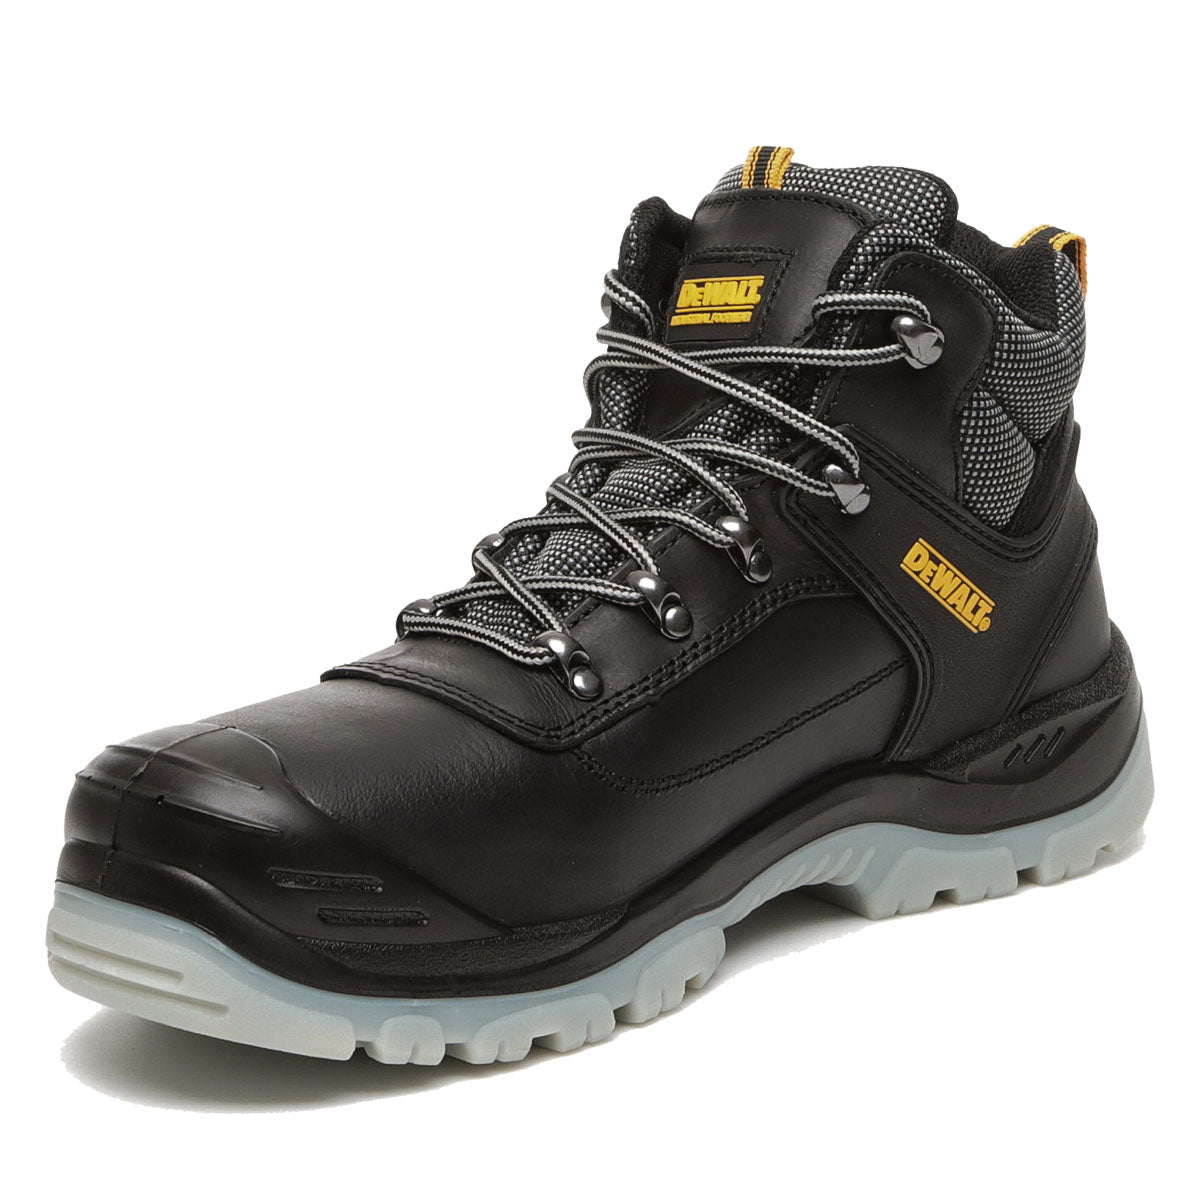 DeWalt Laser Safety Hiker Boots